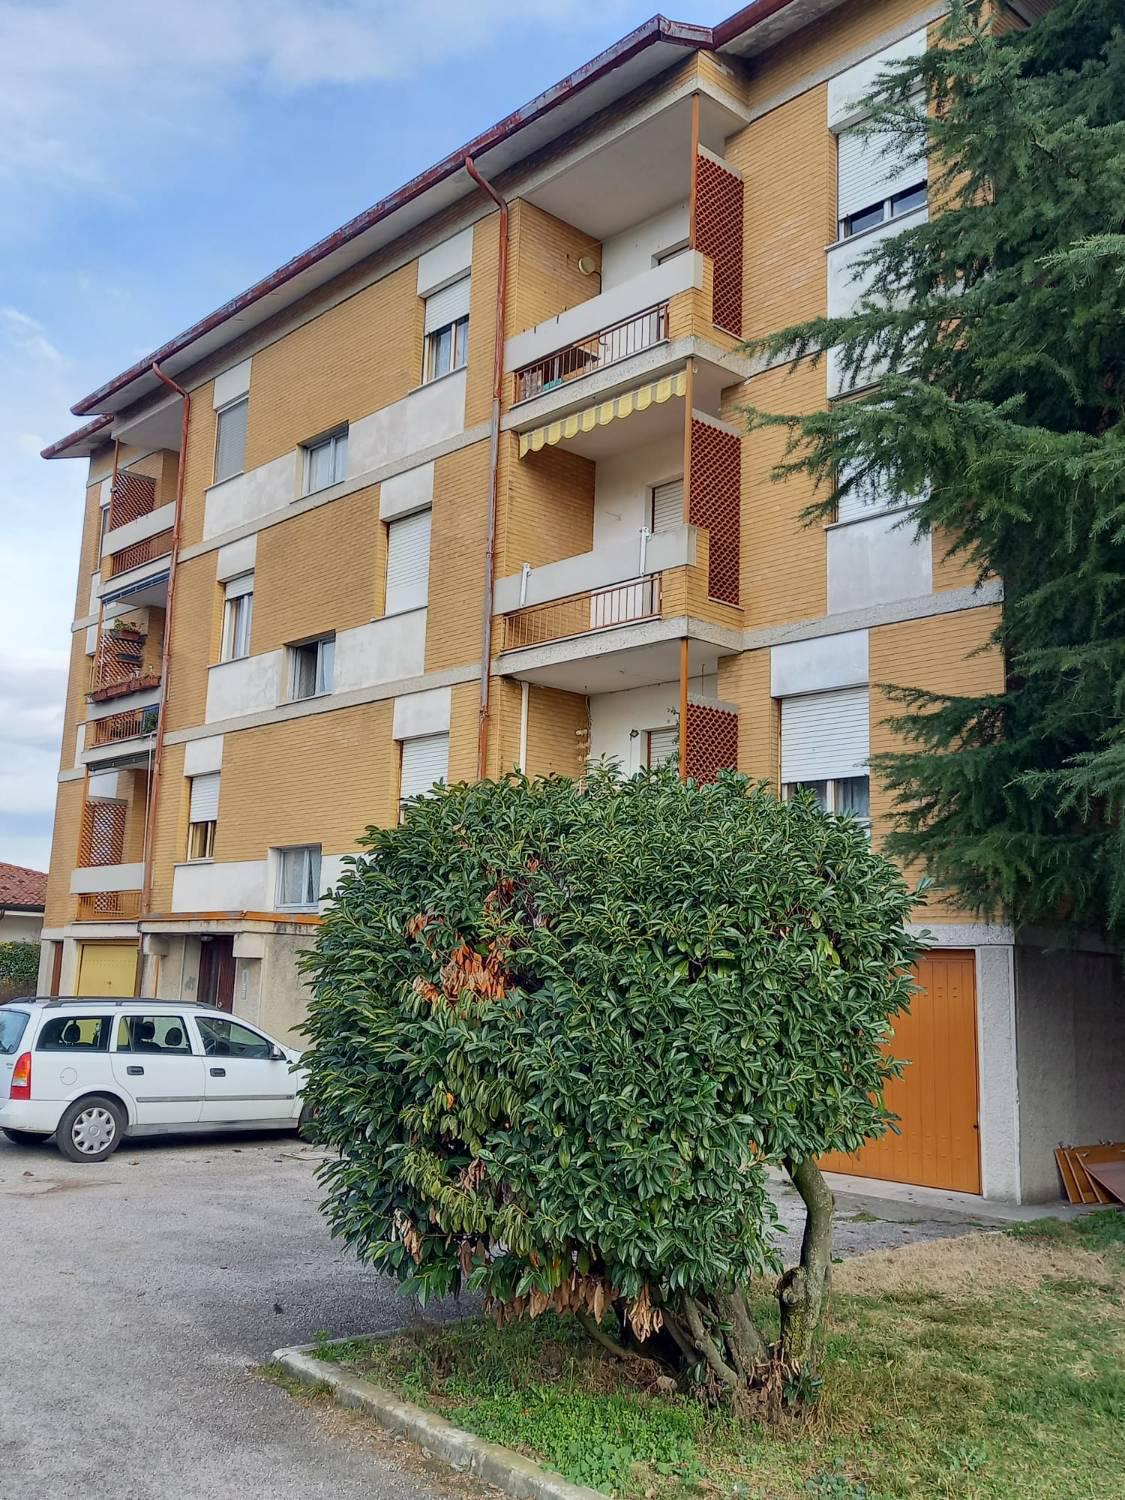 Appartamento in vendita a Romans d'Isonzo, 6 locali, prezzo € 82.000 | CambioCasa.it